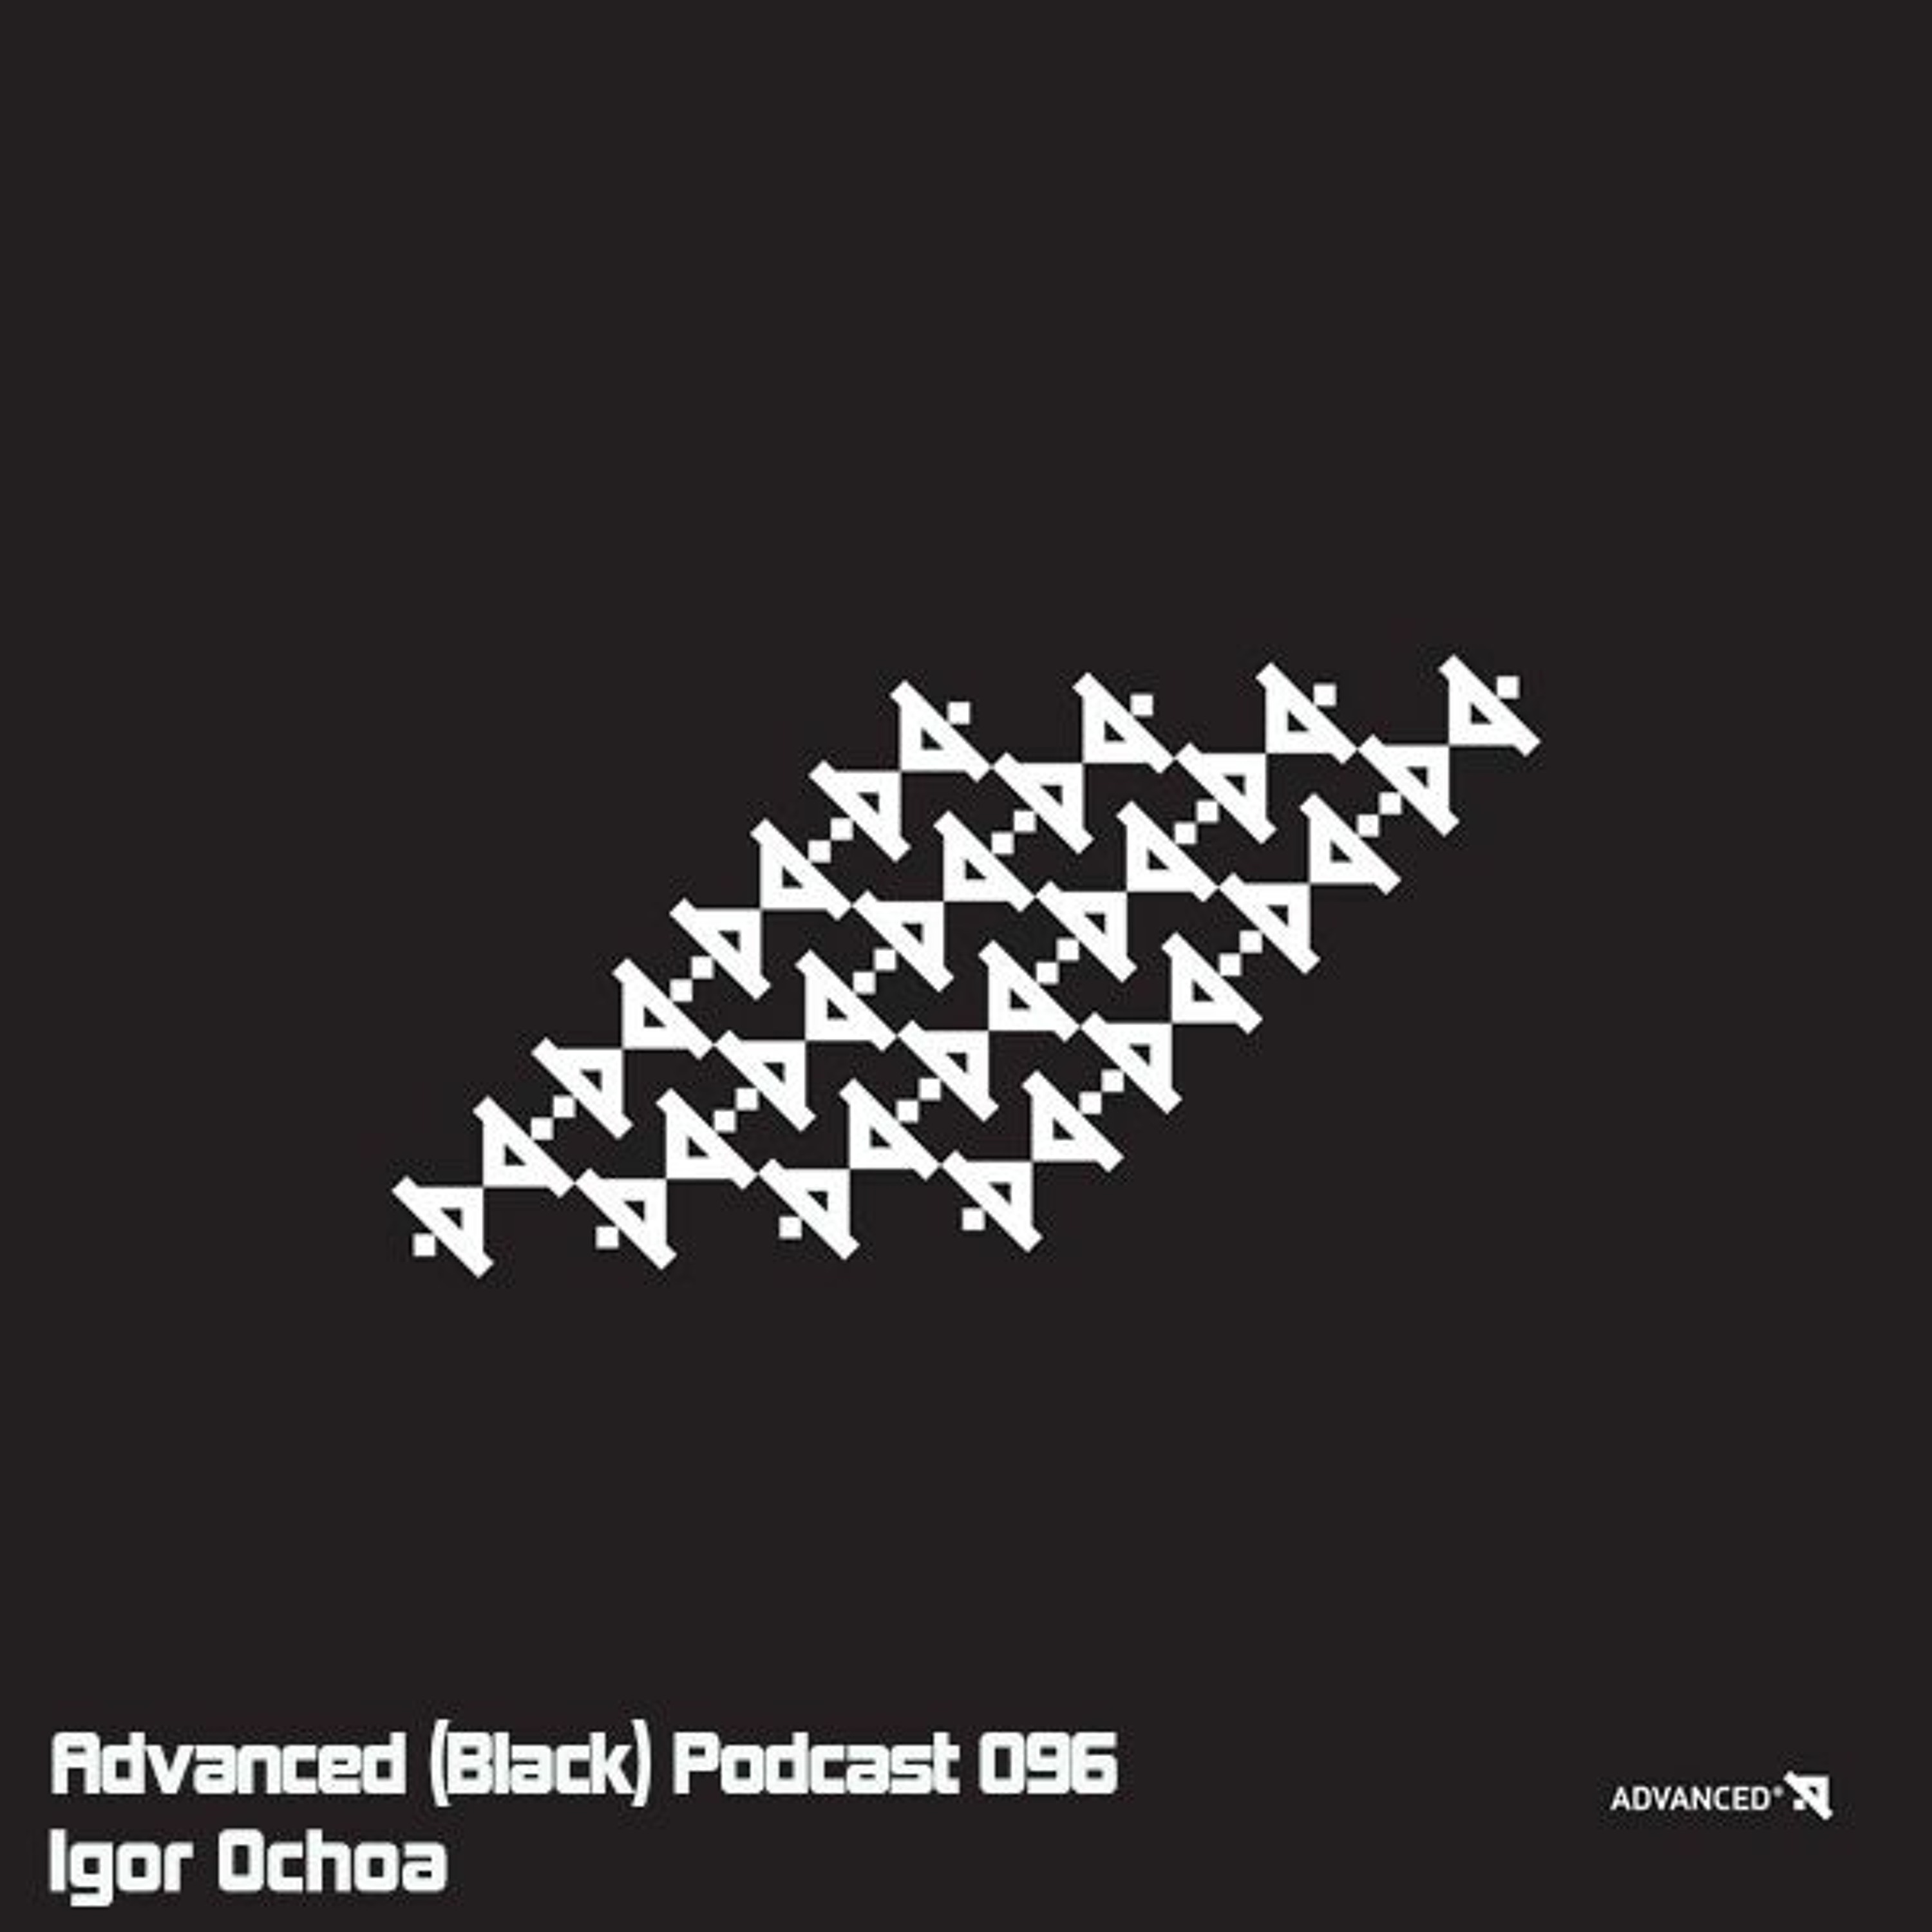 Advanced (Black) Podcast 096 with Igor Ochoa